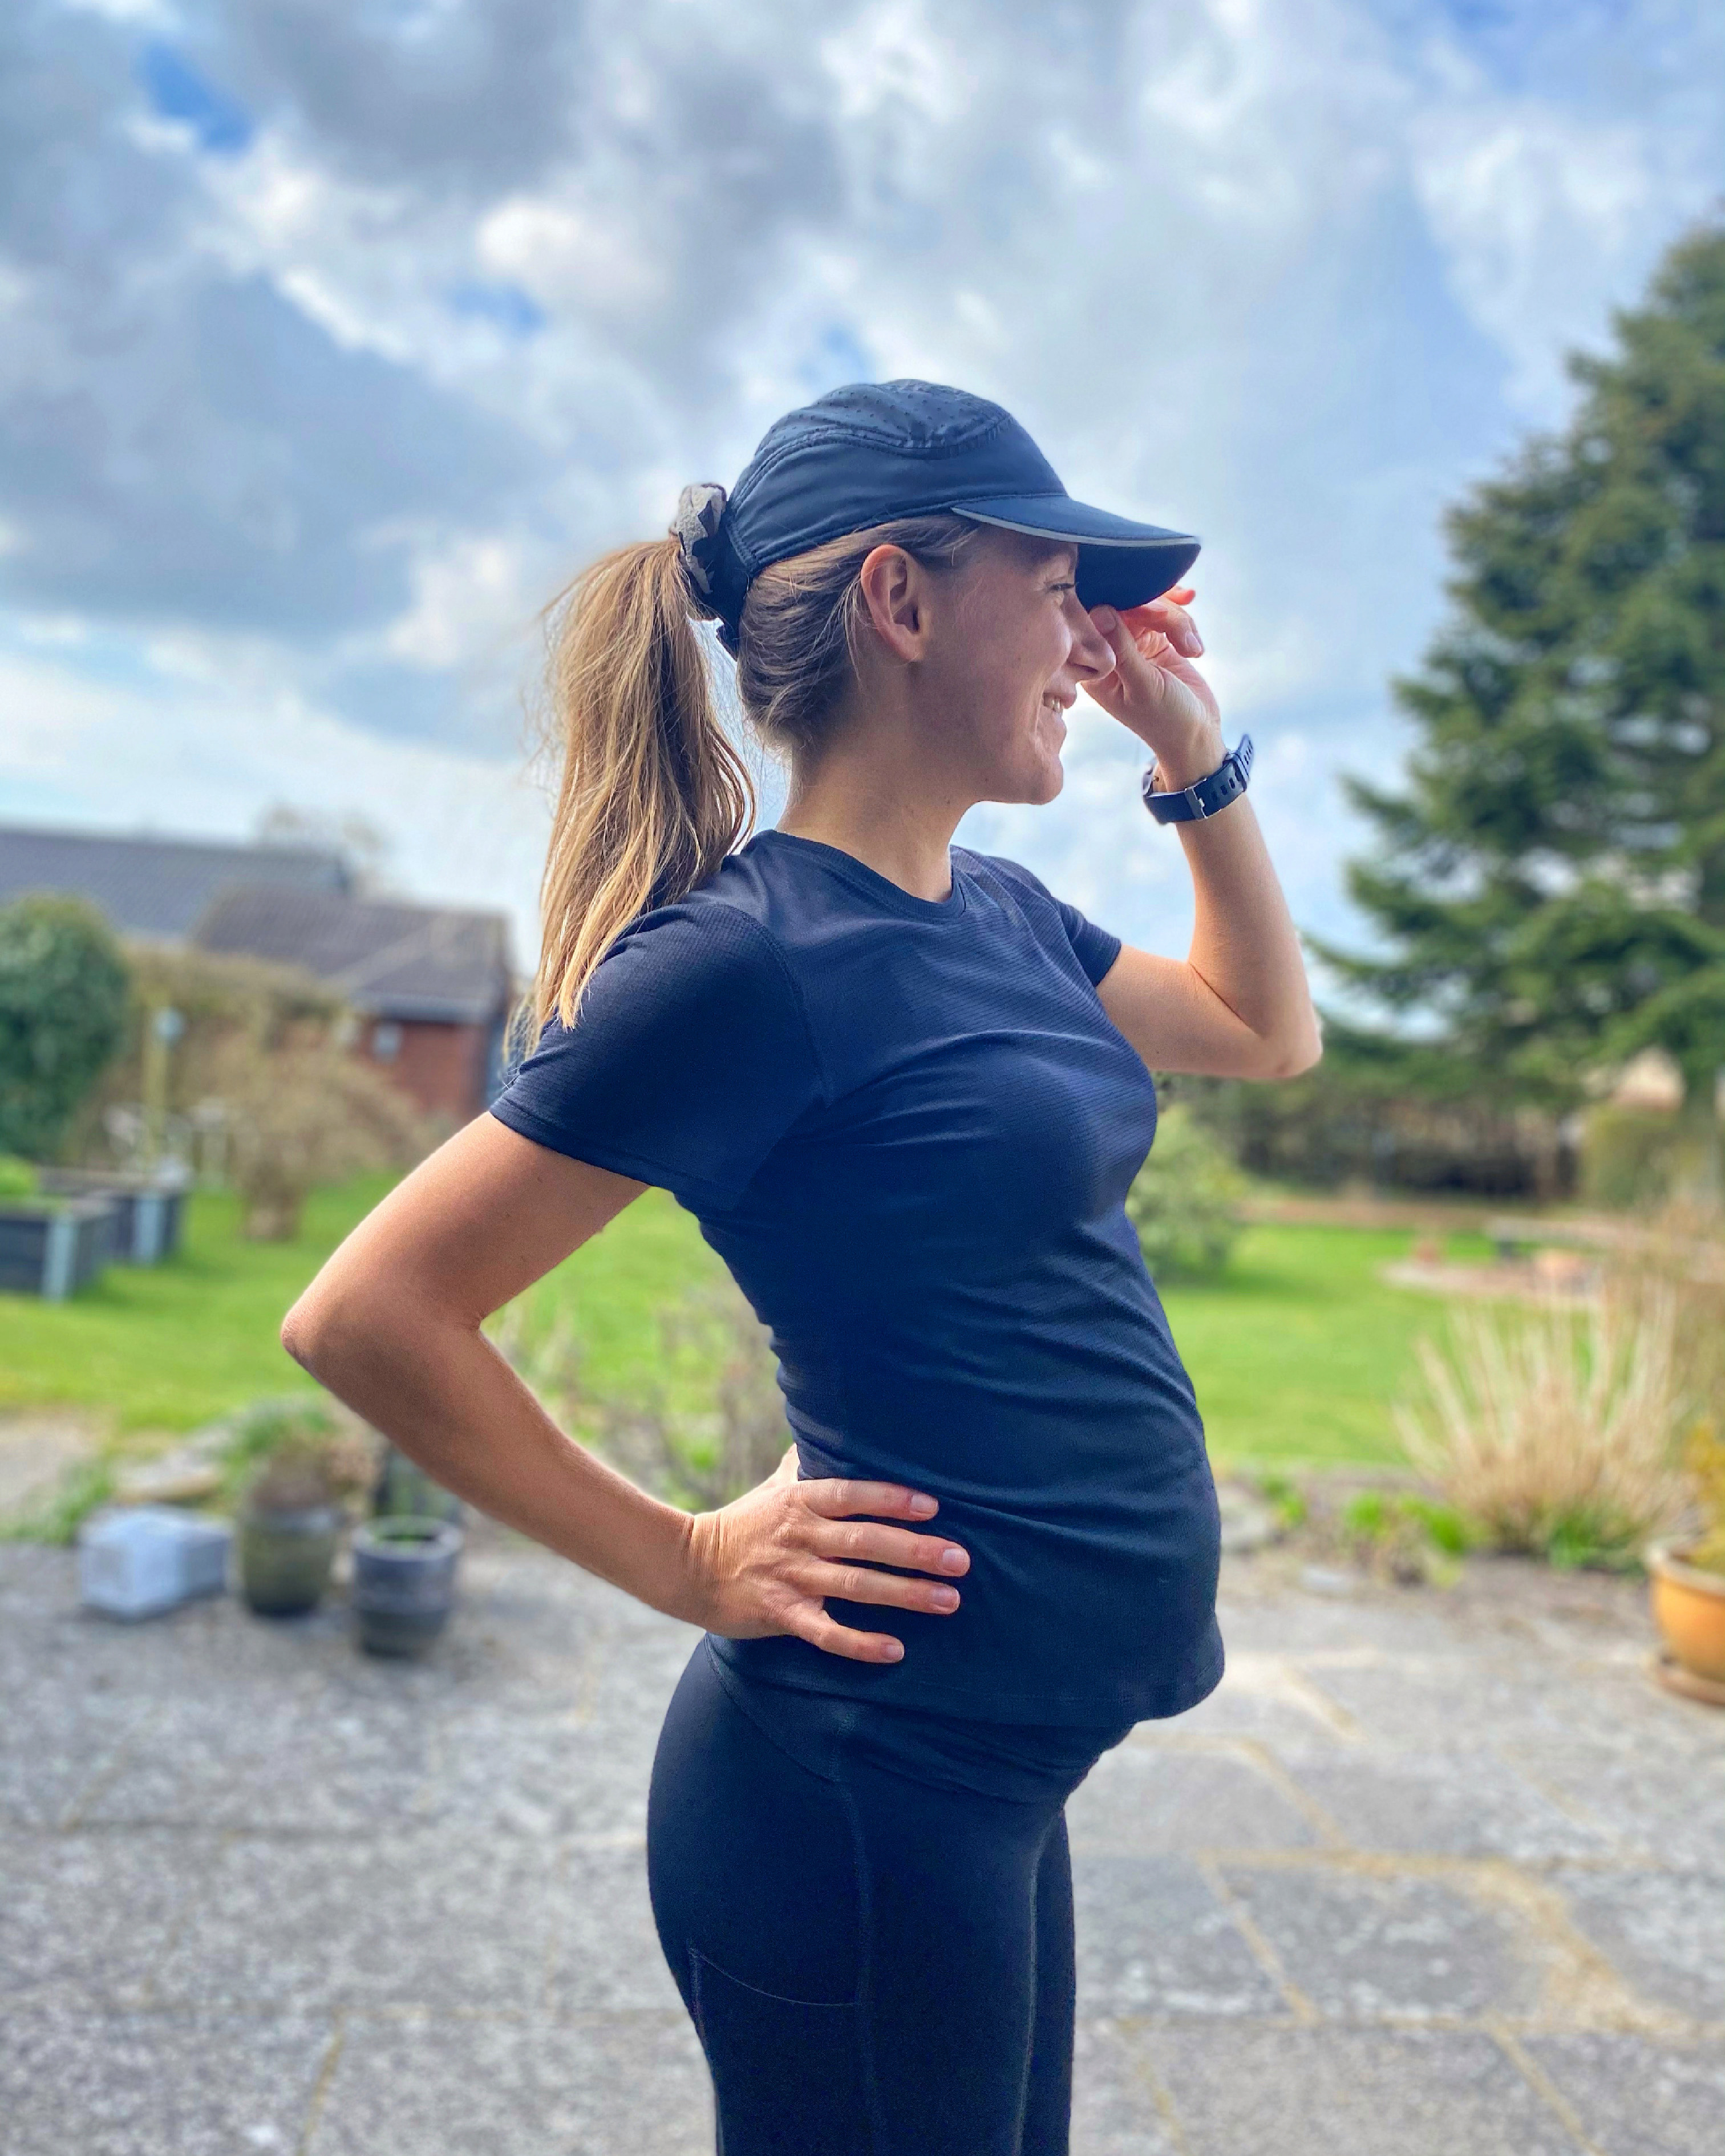 Løb som gravid: Sådan løber du som gravid | LØBEREN